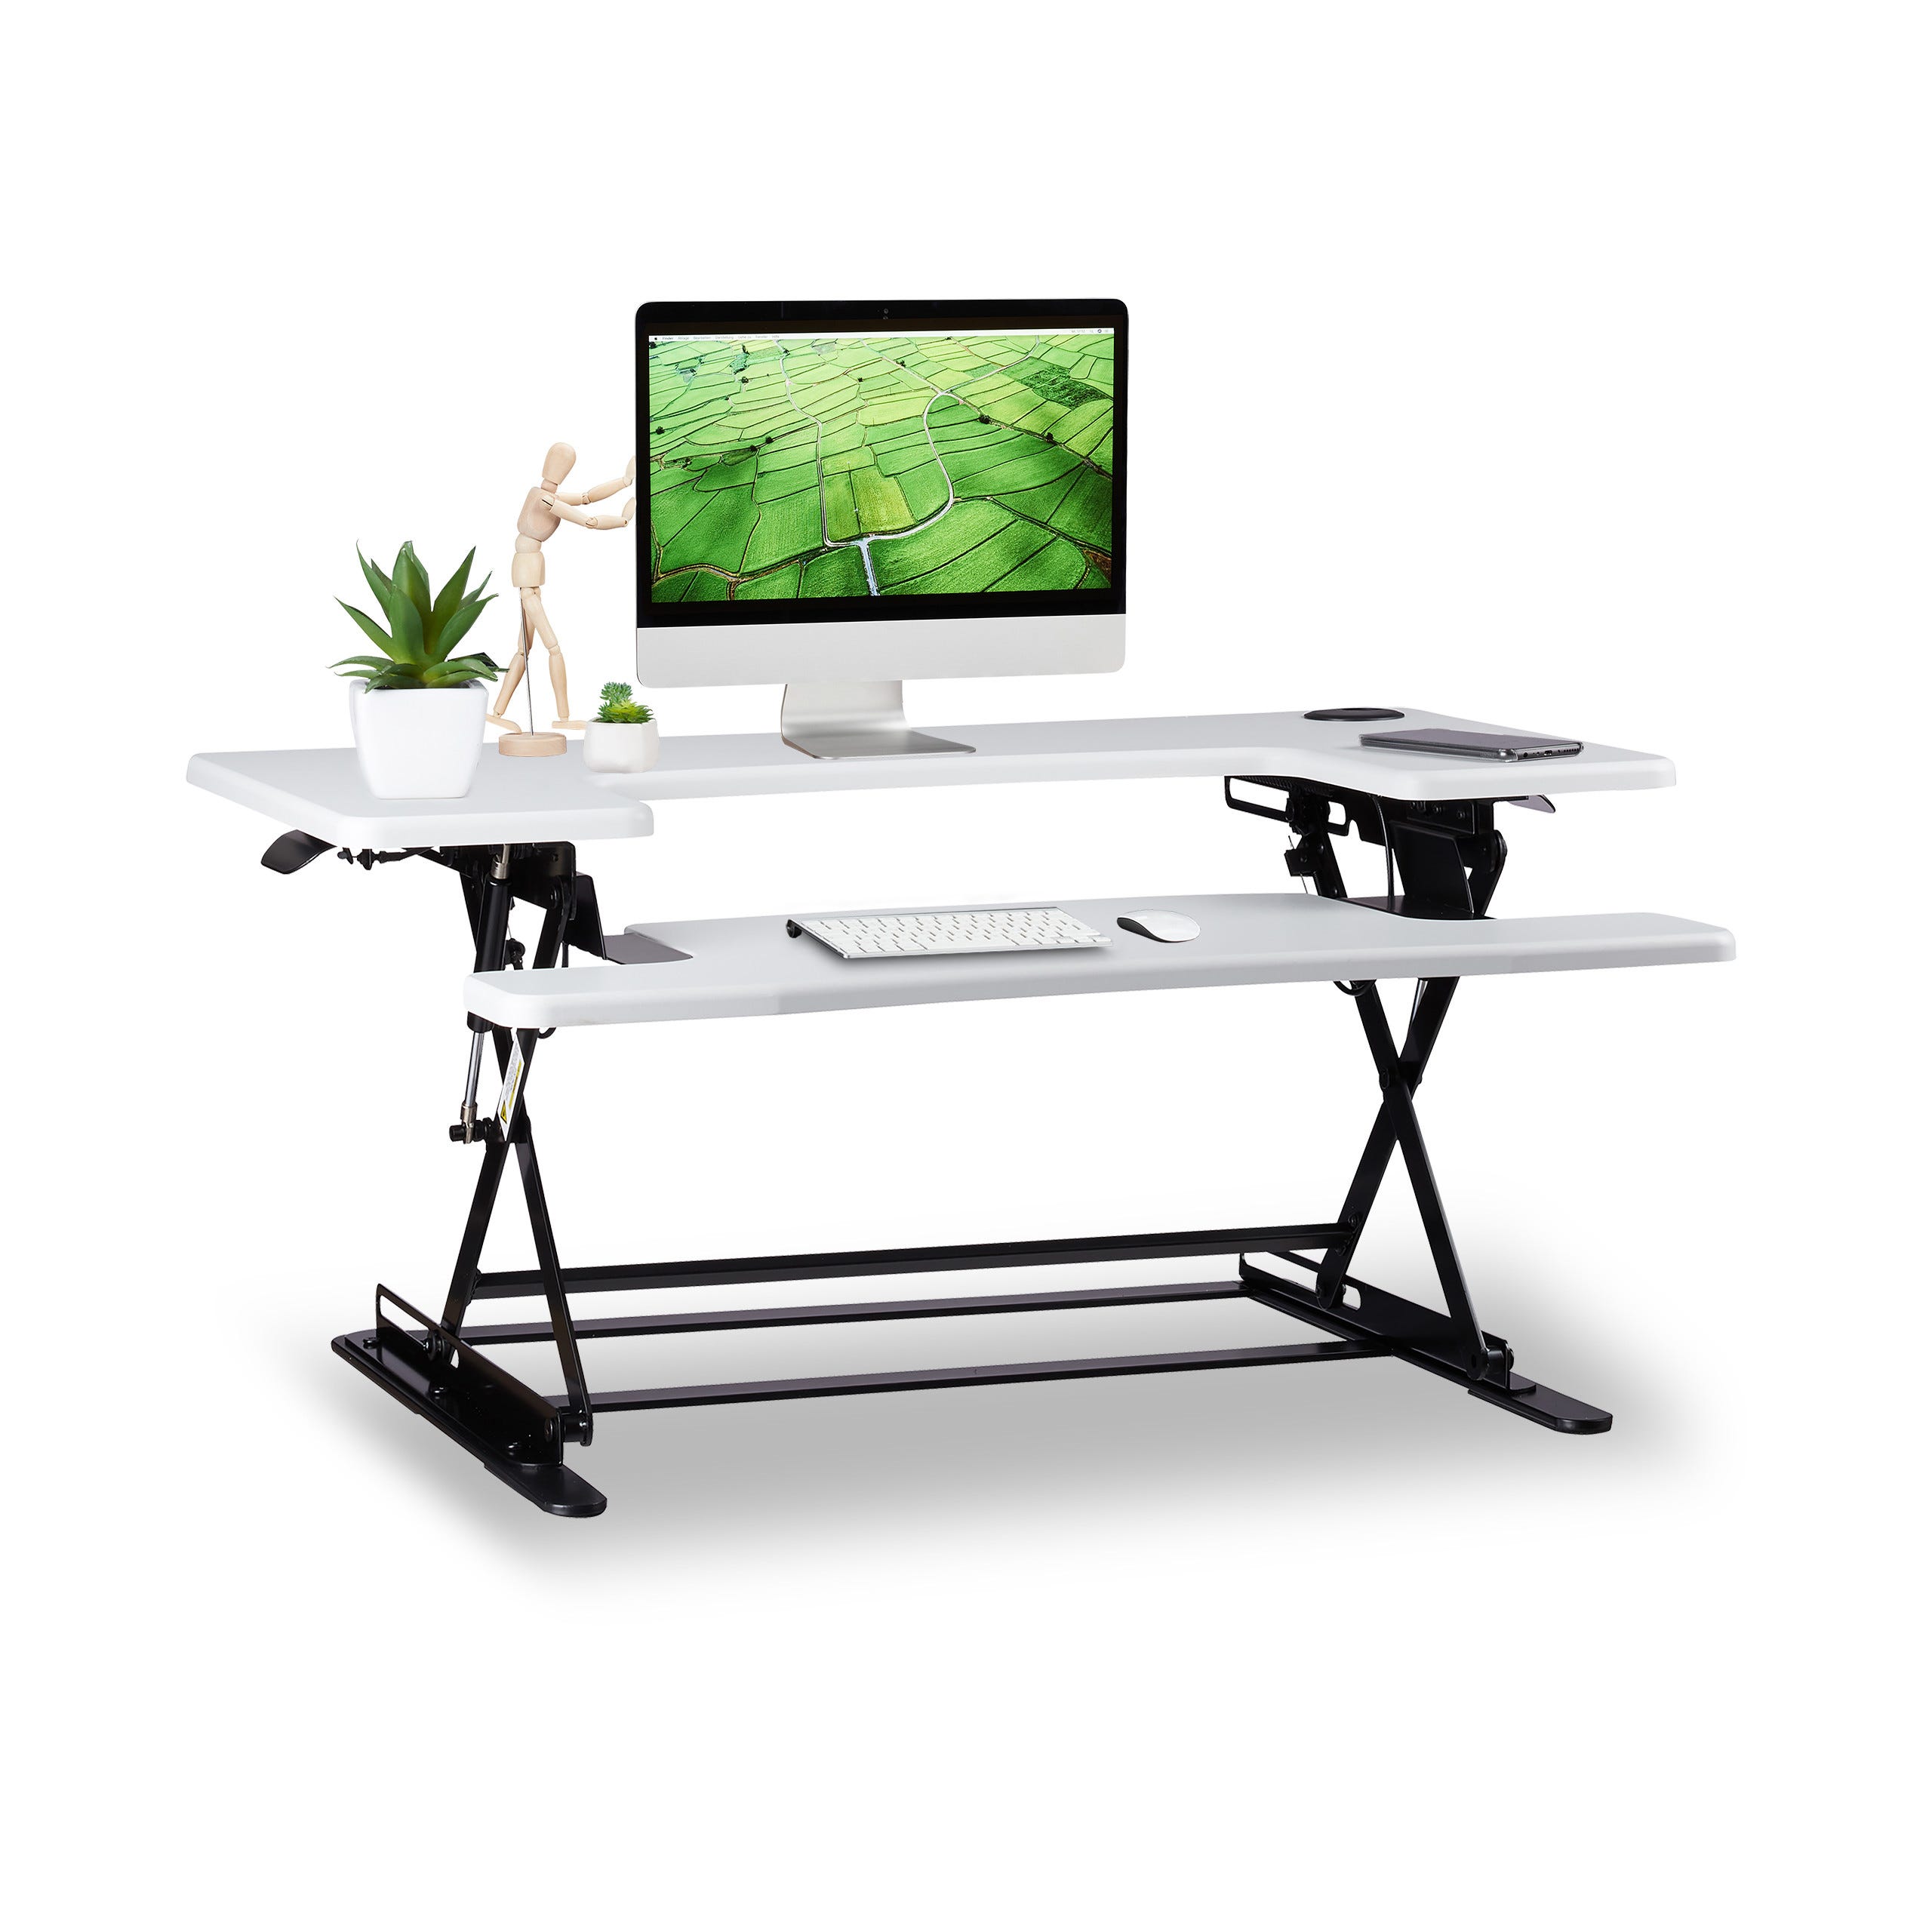 Relaxdays Supporto per Monitor da Scrivania, Standing Desk Professionale,  Lavorare Seduti o in Piedi, Regolabile, Bianco